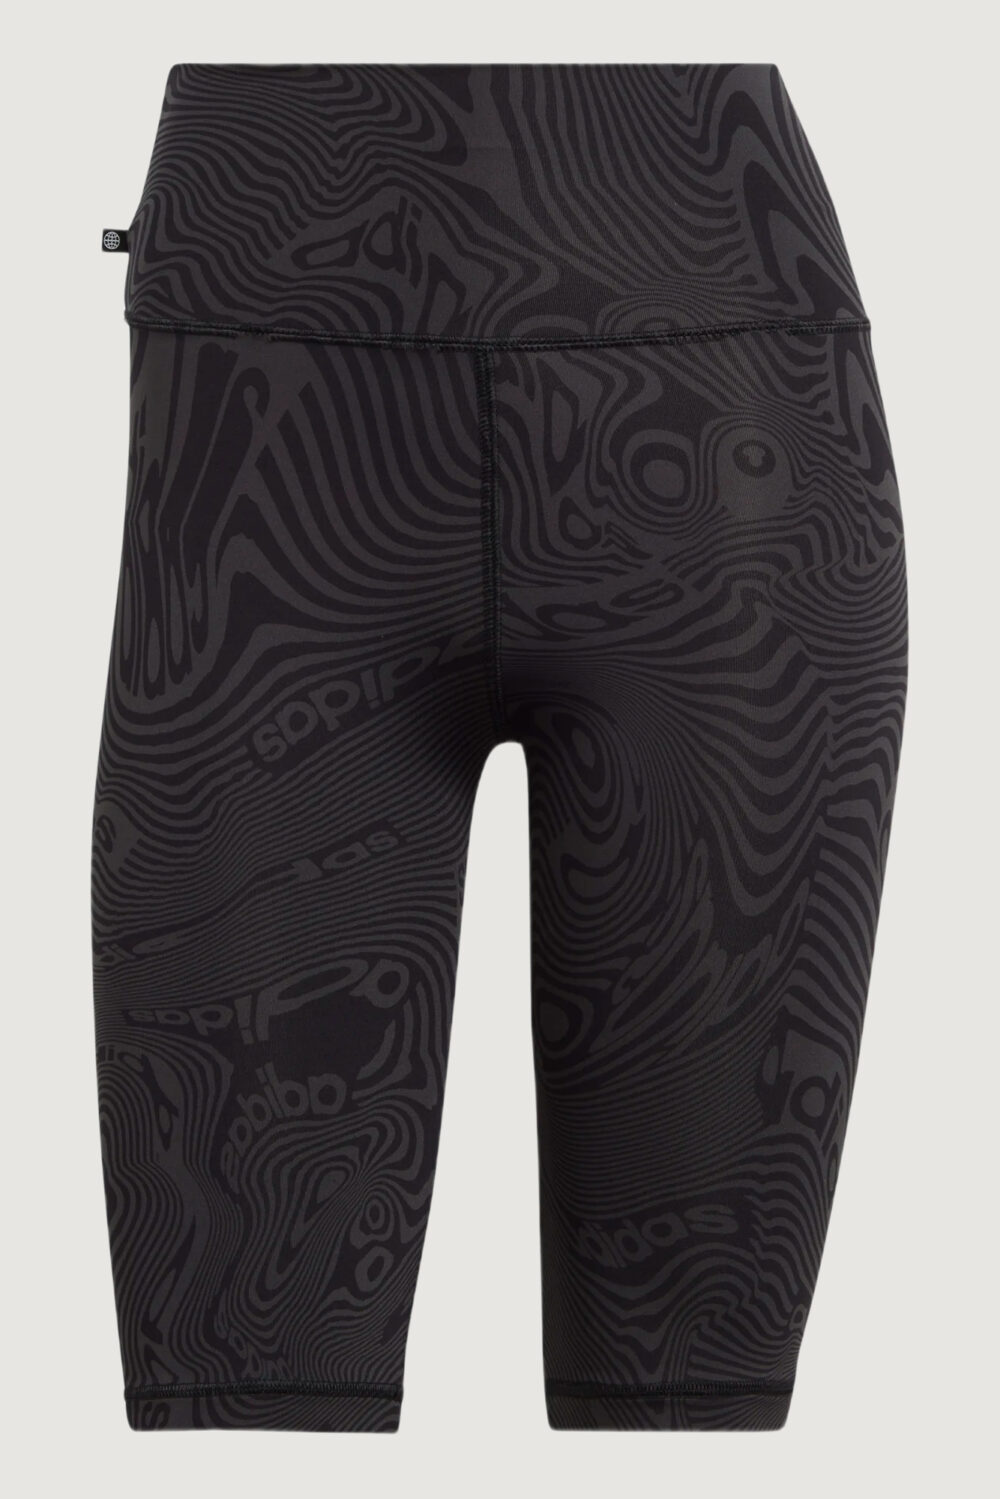 Bermuda Adidas aop short tight carbon/black Antracite - Foto 2